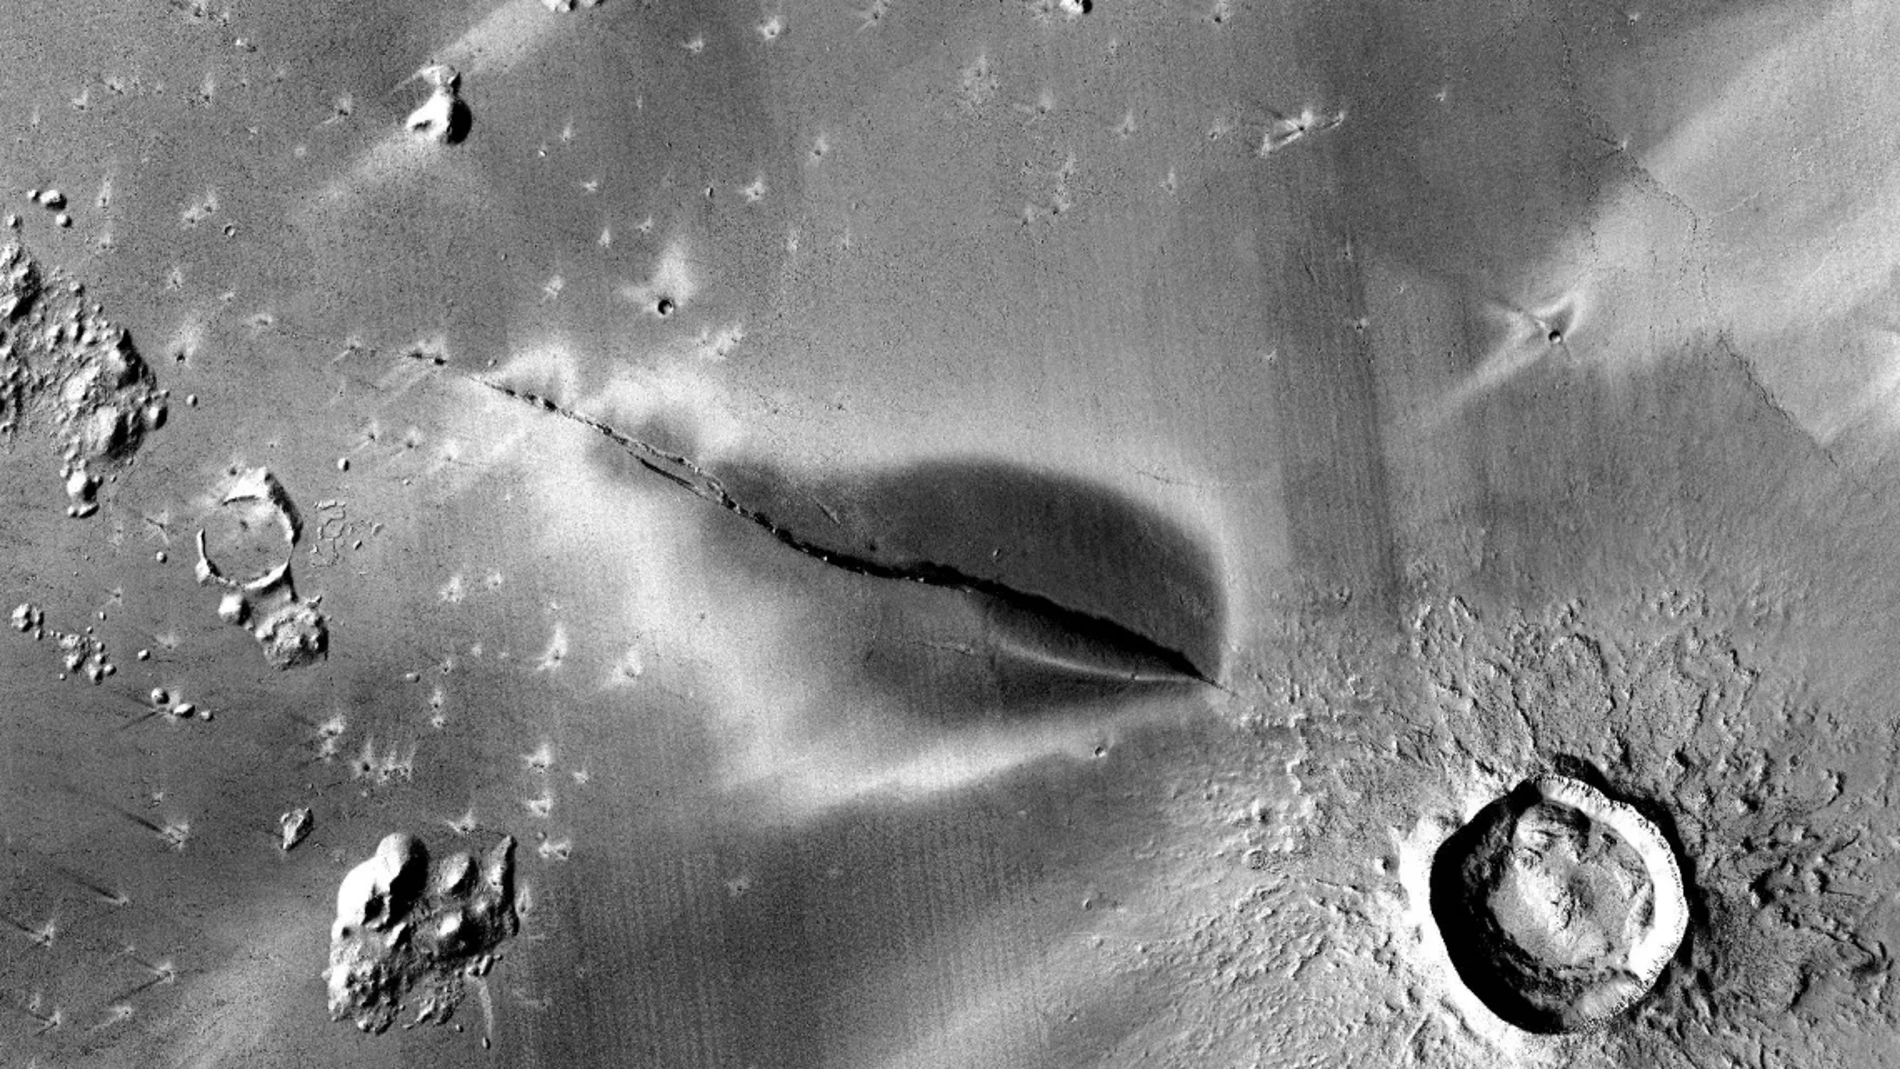 La fisura marciana que presenta signos de actividad volcánica reciente.